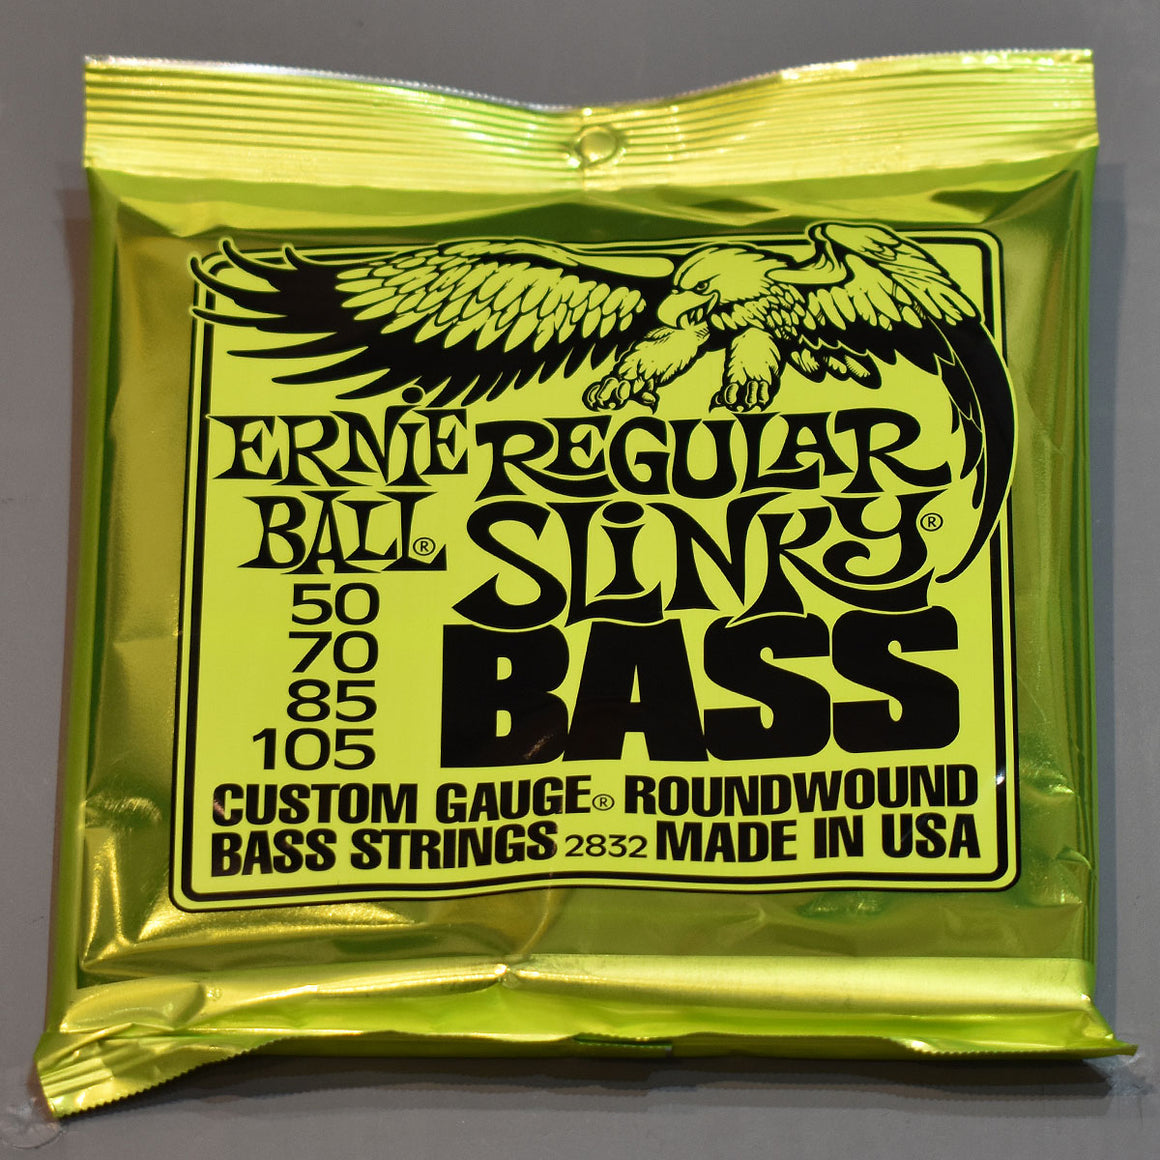 Ernie Ball Regular Slinky Bass Nickel Wound Electric Bass Strings - 50-105 Gauge